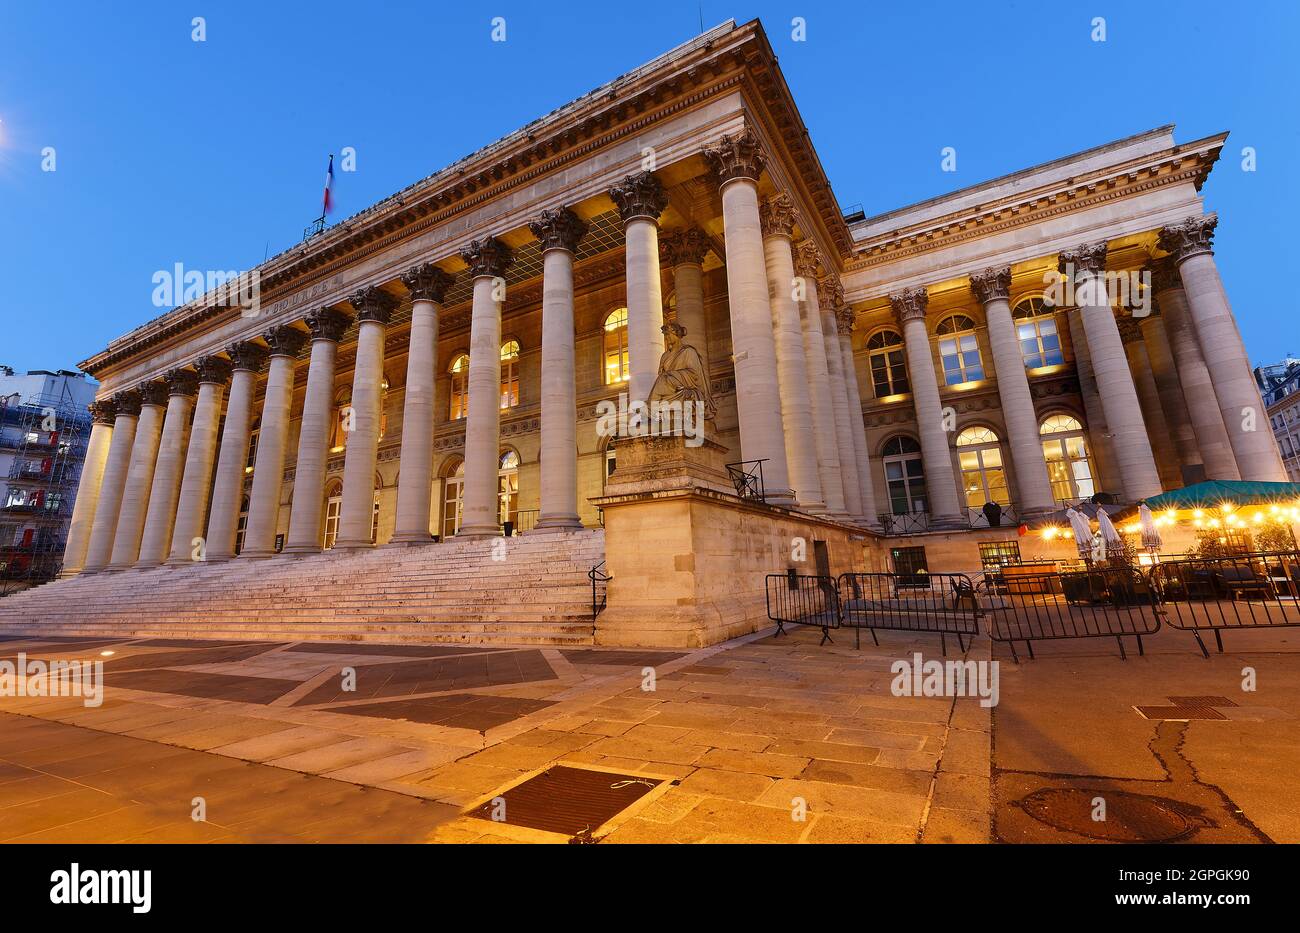 Die Börse von Paris - brongniart Palast bei Nacht, Paris, Frankreich. Stockfoto